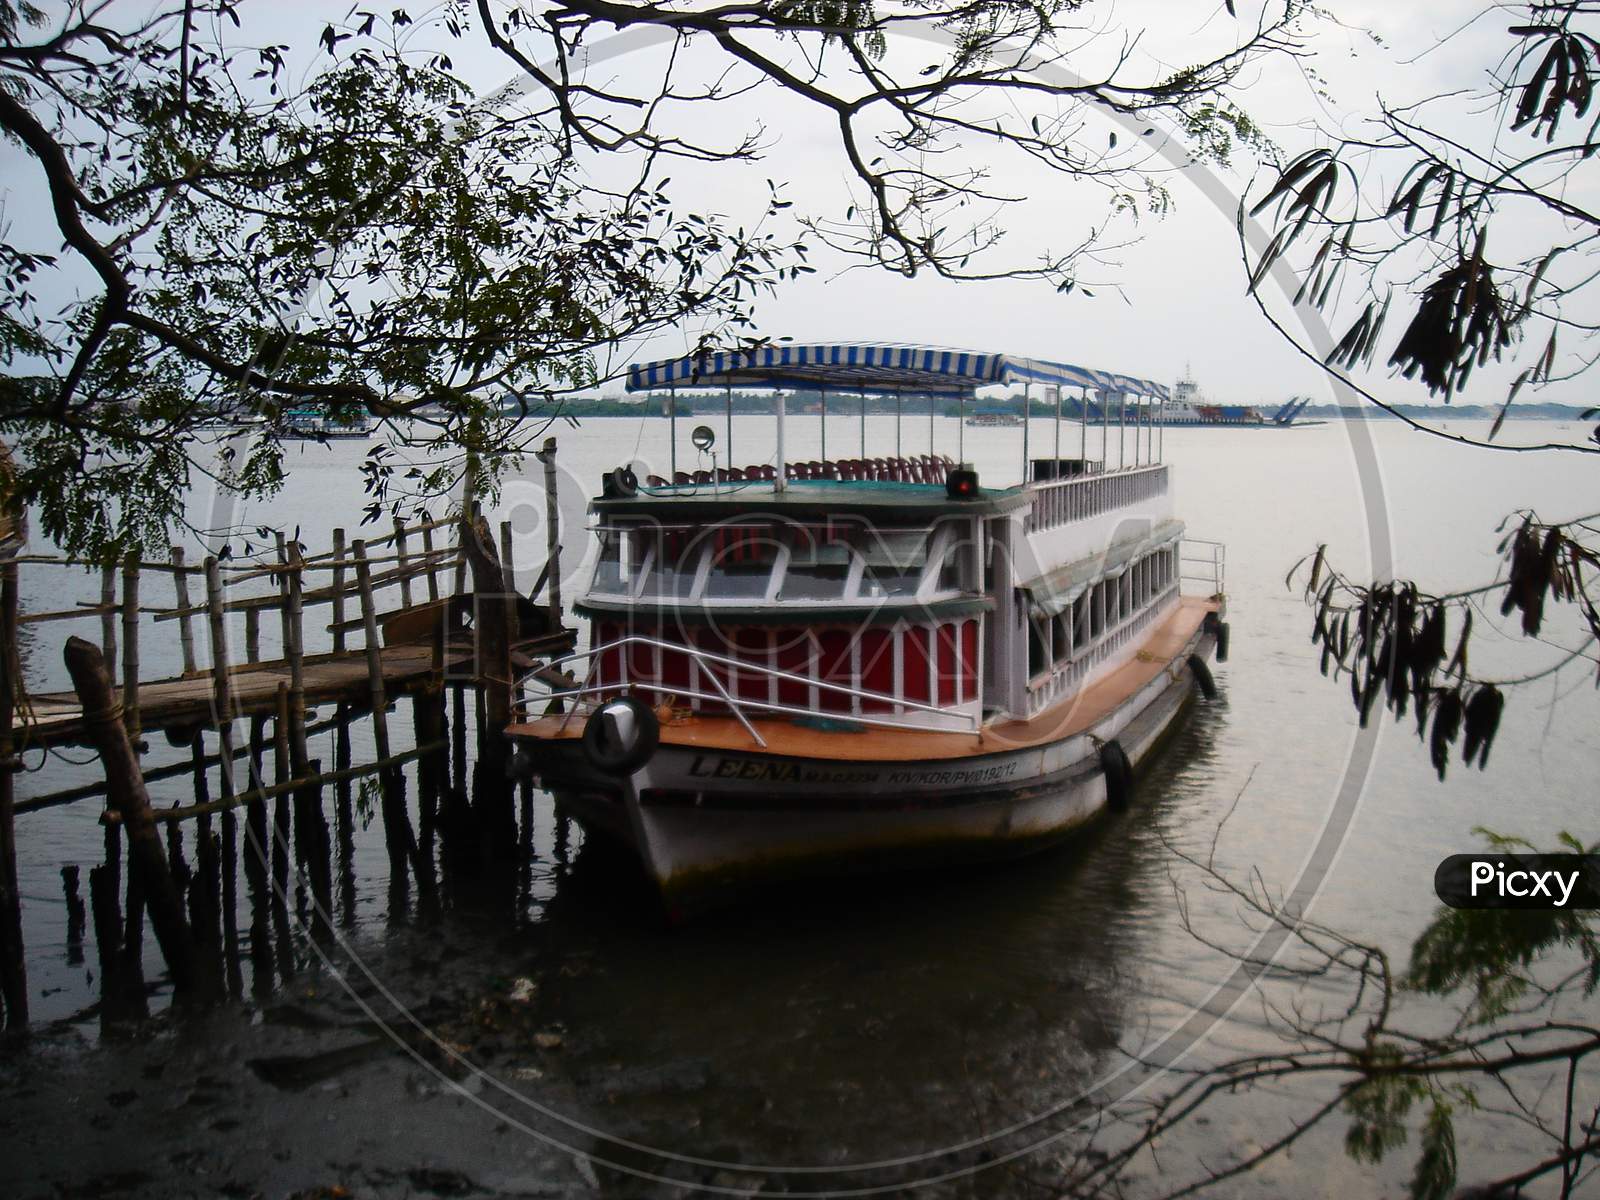 Boat Kerala Ferry